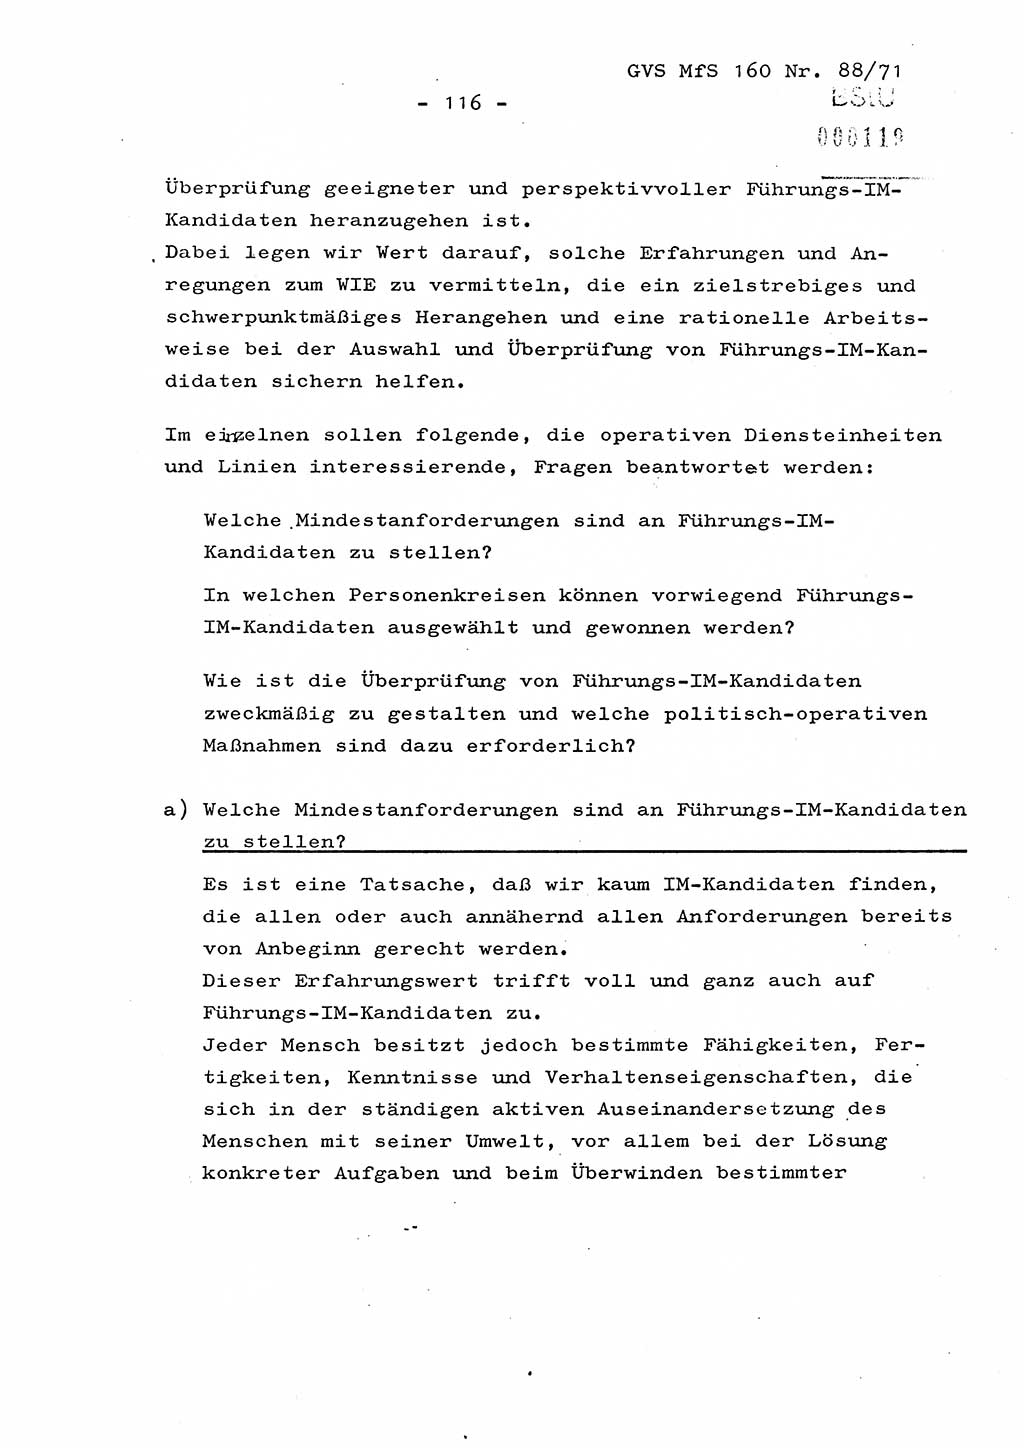 Dissertation Oberstleutnant Josef Schwarz (BV Schwerin), Major Fritz Amm (JHS), Hauptmann Peter Gräßler (JHS), Ministerium für Staatssicherheit (MfS) [Deutsche Demokratische Republik (DDR)], Juristische Hochschule (JHS), Geheime Verschlußsache (GVS) 160-88/71, Potsdam 1972, Seite 116 (Diss. MfS DDR JHS GVS 160-88/71 1972, S. 116)